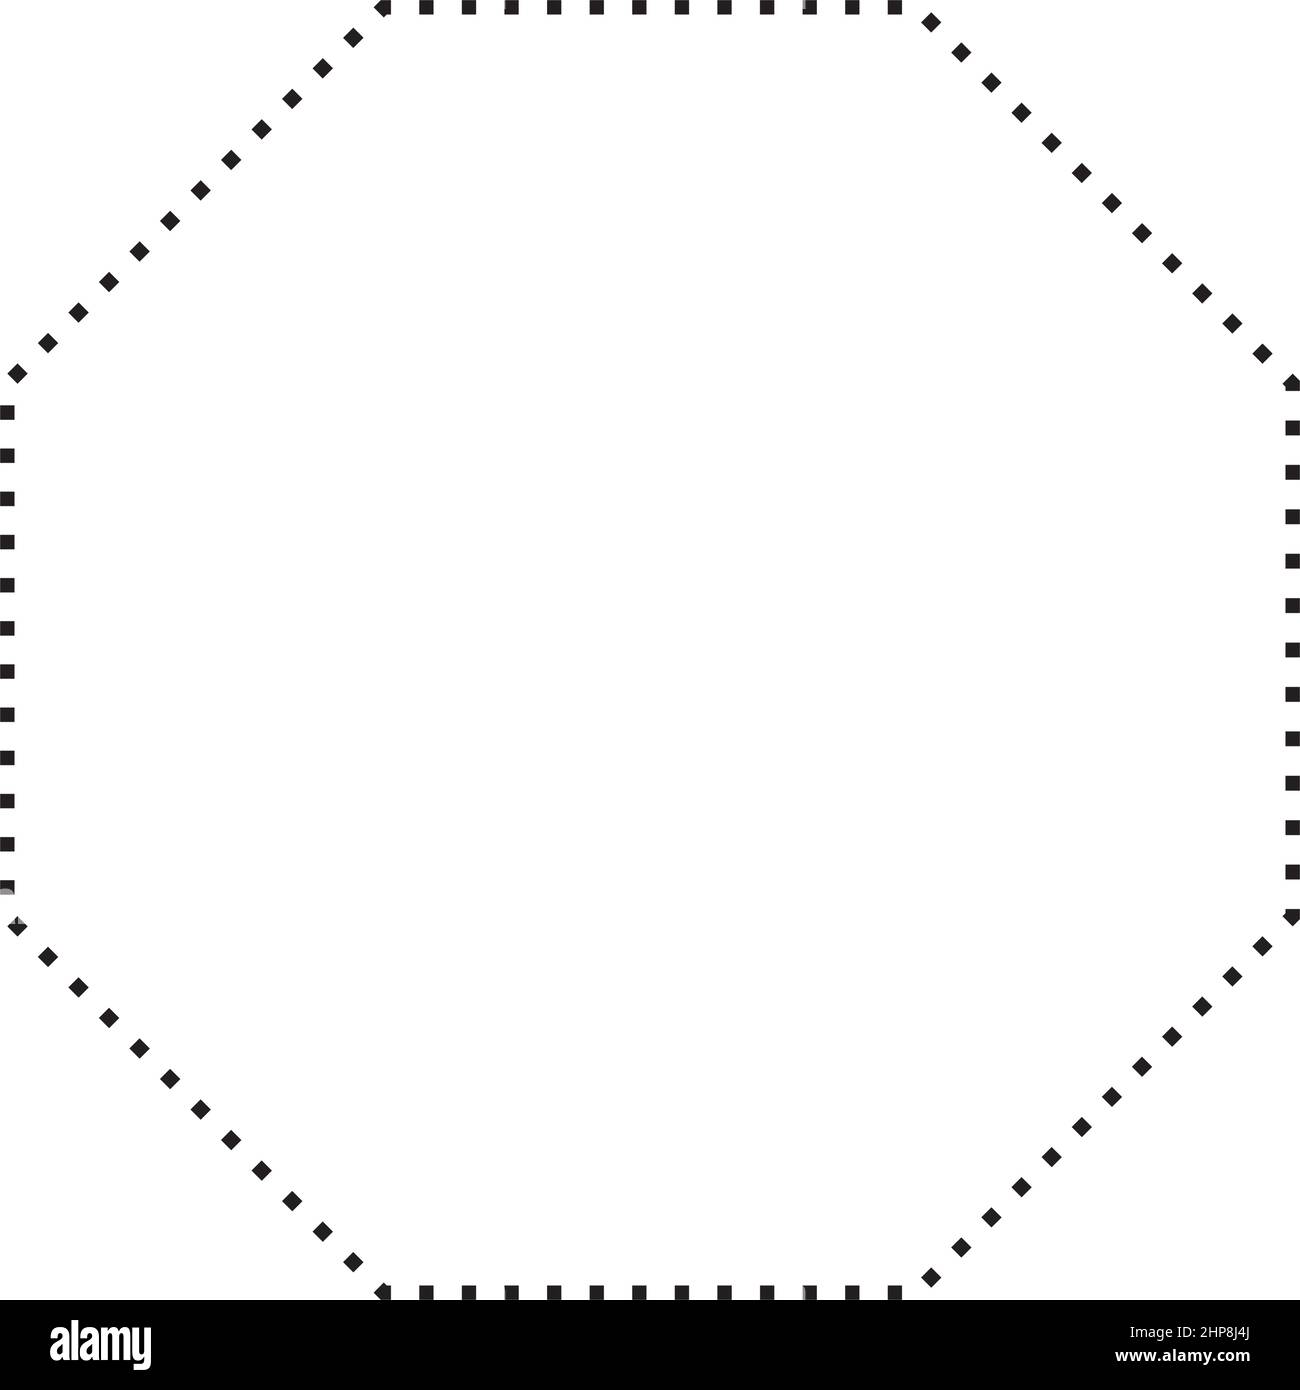 Octagon Symbol gepunktete Form Vektor-Symbol für kreative Grafik-Design-ui-Element in einem Piktogramm Illustration Stock Vektor